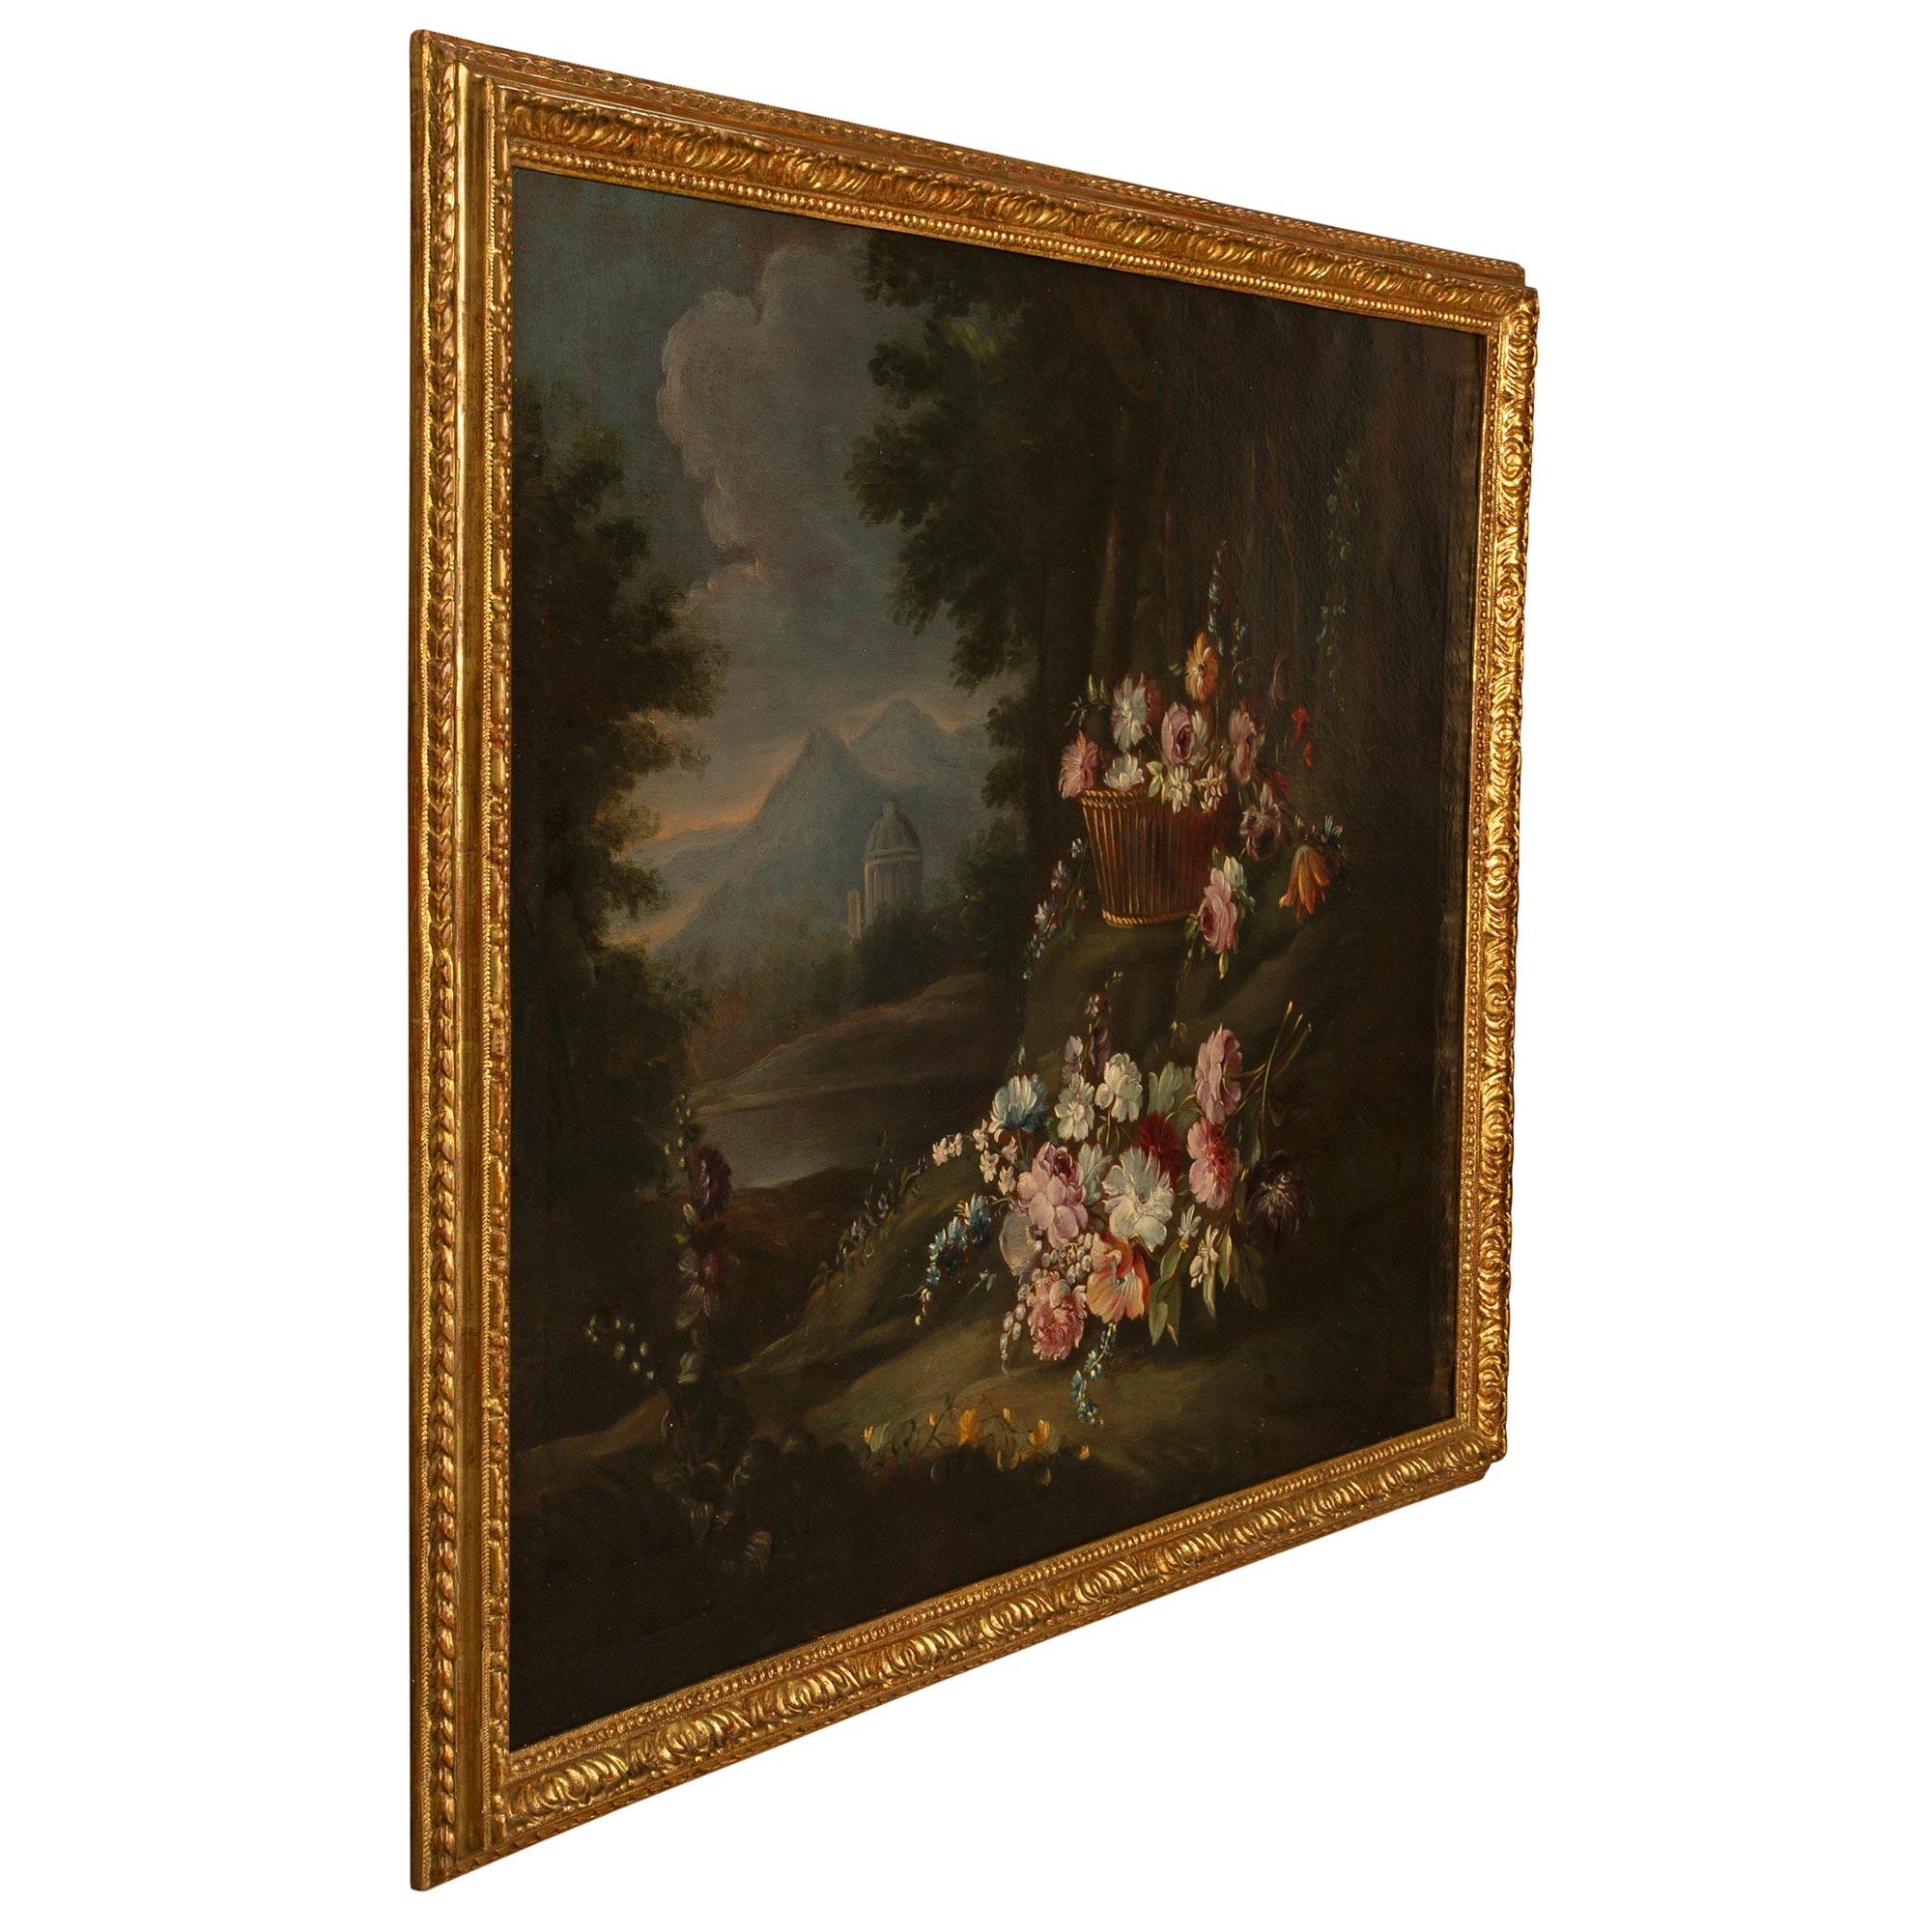 Une belle et charmante huile sur toile d'époque Louis XVI du 18ème siècle dans son cadre original en bois doré. Le tableau représente des fleurs colorées merveilleusement exécutées et finement détaillées sur une clairière dans la forêt. Assemblés